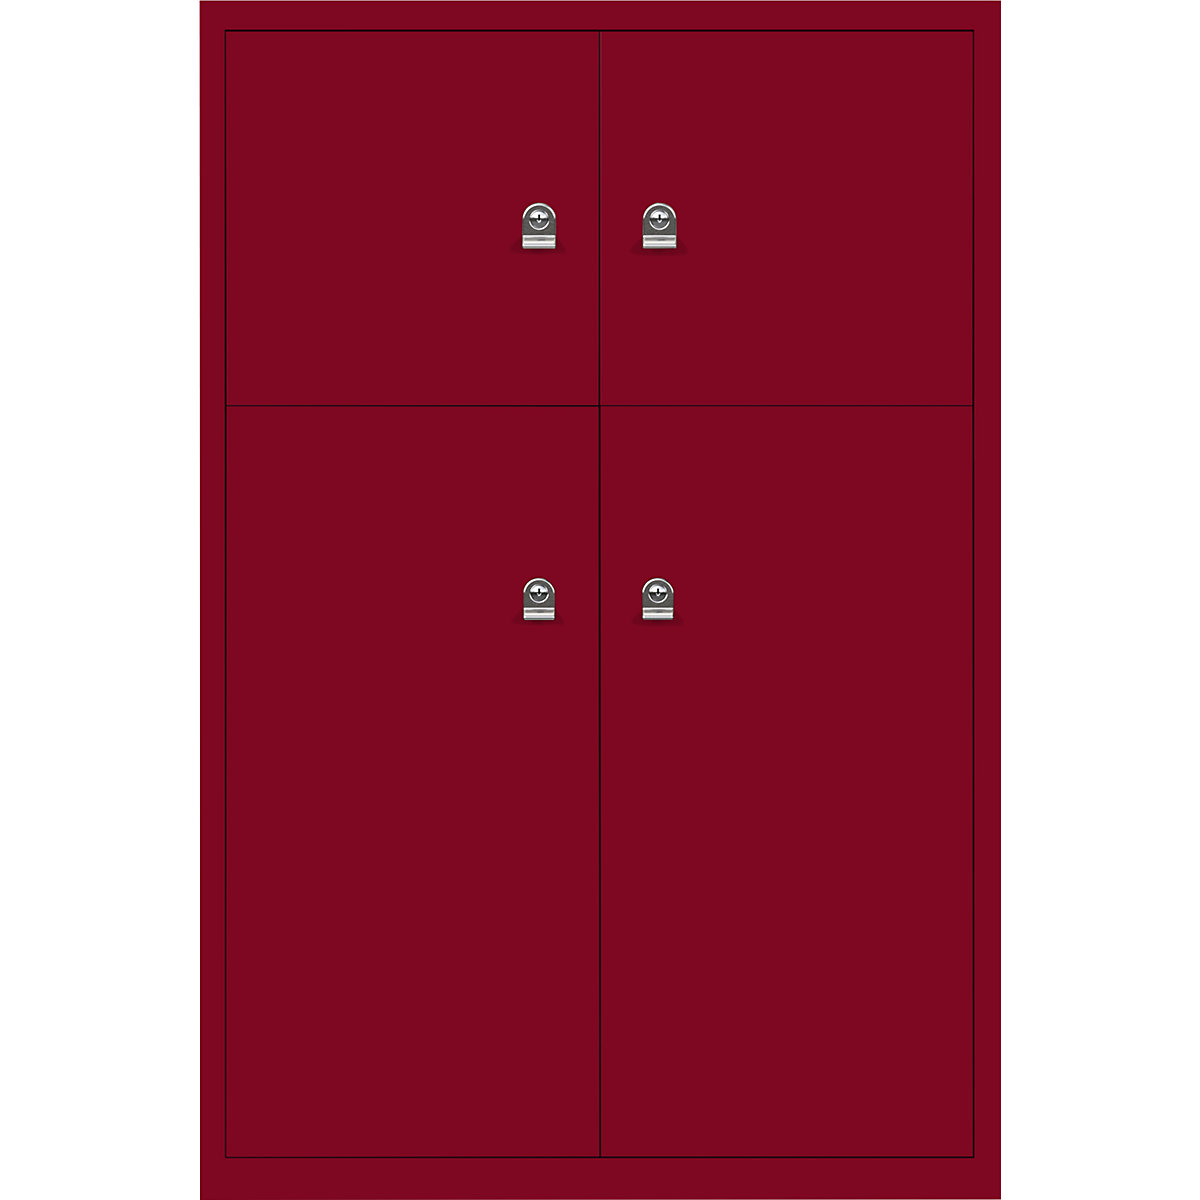 Omara s predelki z zaklepanjem LateralFile™ – BISLEY, 4 predelki z zaklepanjem, višina 2 x 375 mm, 2 x 755 mm, kardinalsko rdeče barve-25